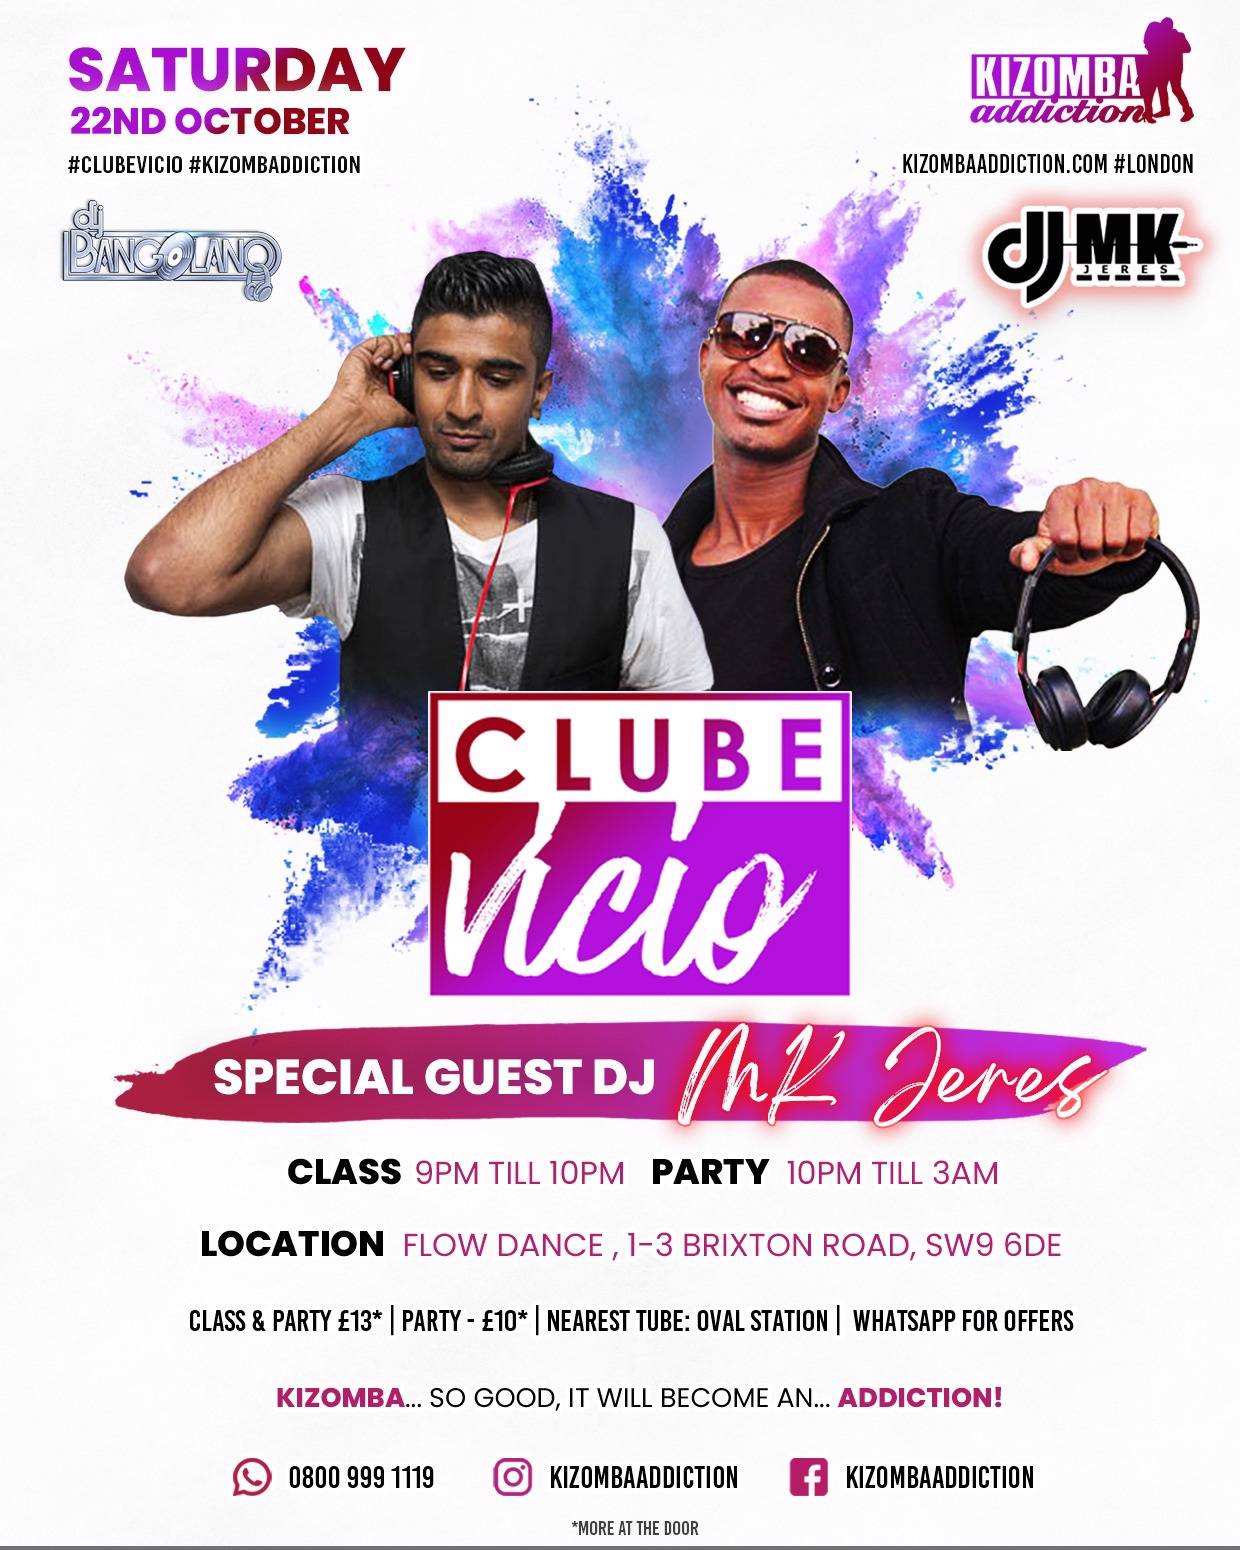 Flyer Clube Vicio - Kizomba Party & Dance Classes on Saturday Nights